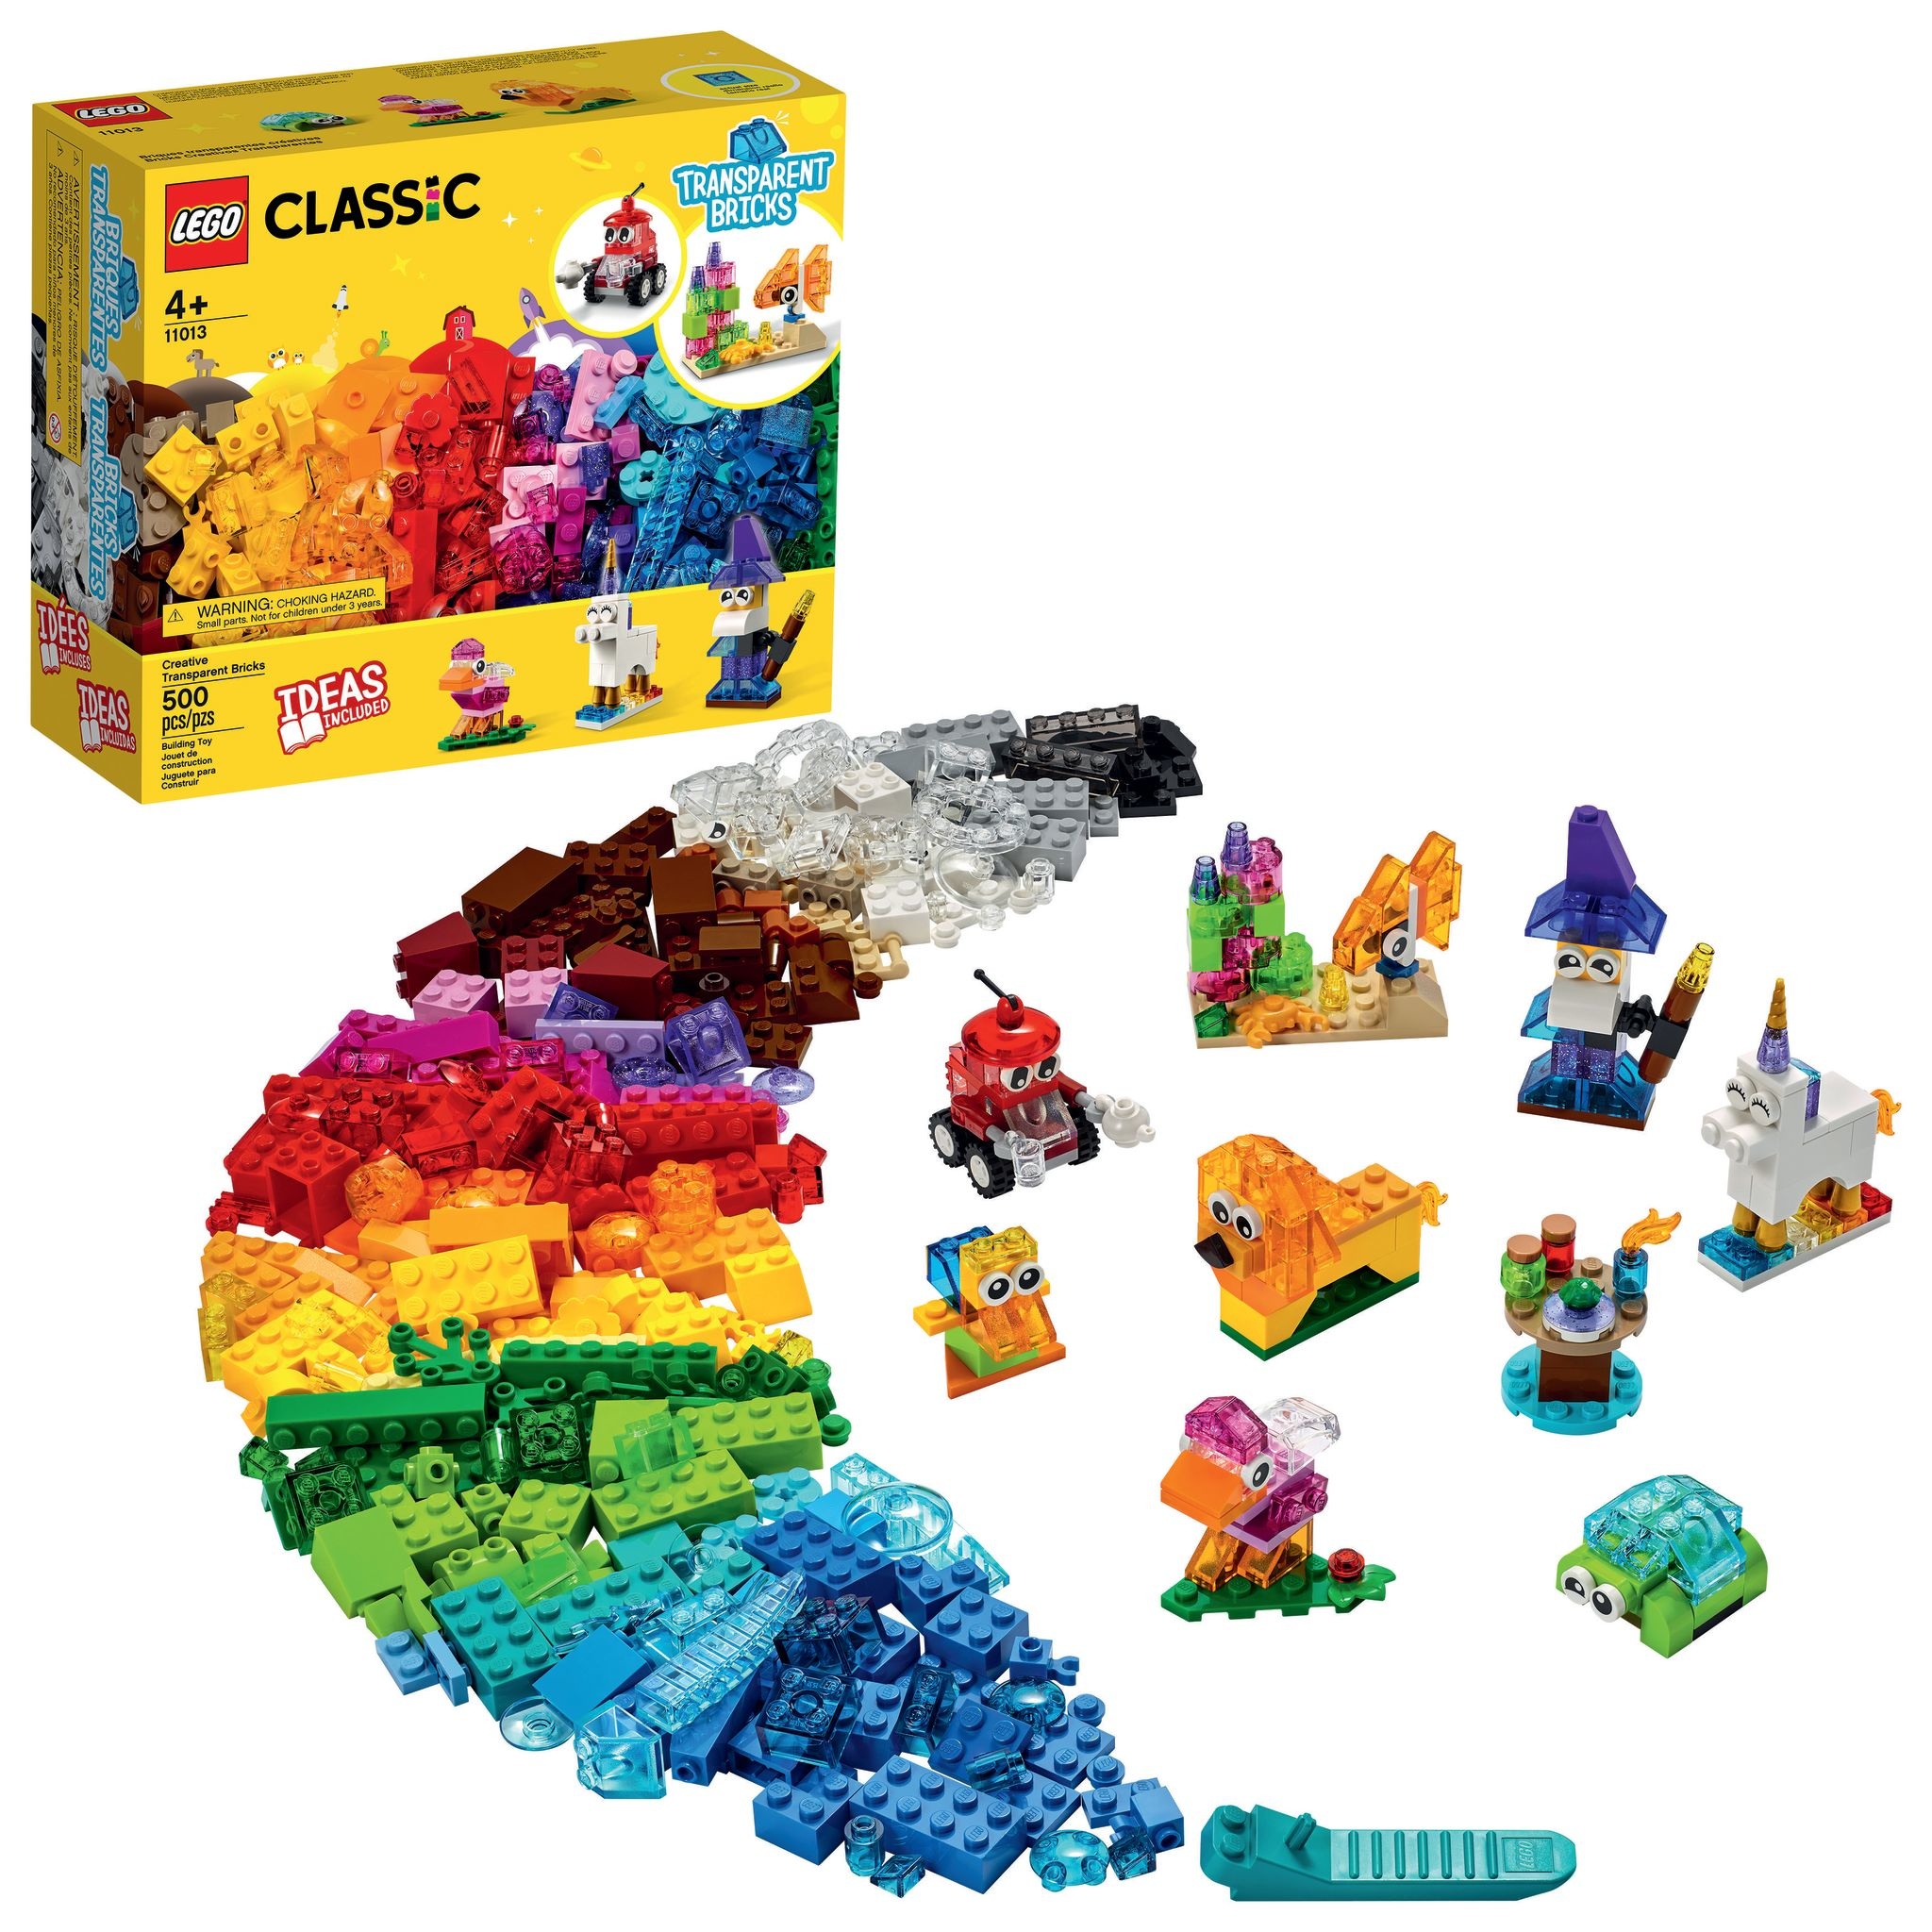 LEGO® Classic Creative Transparent Bricks - Tools 4 Teaching